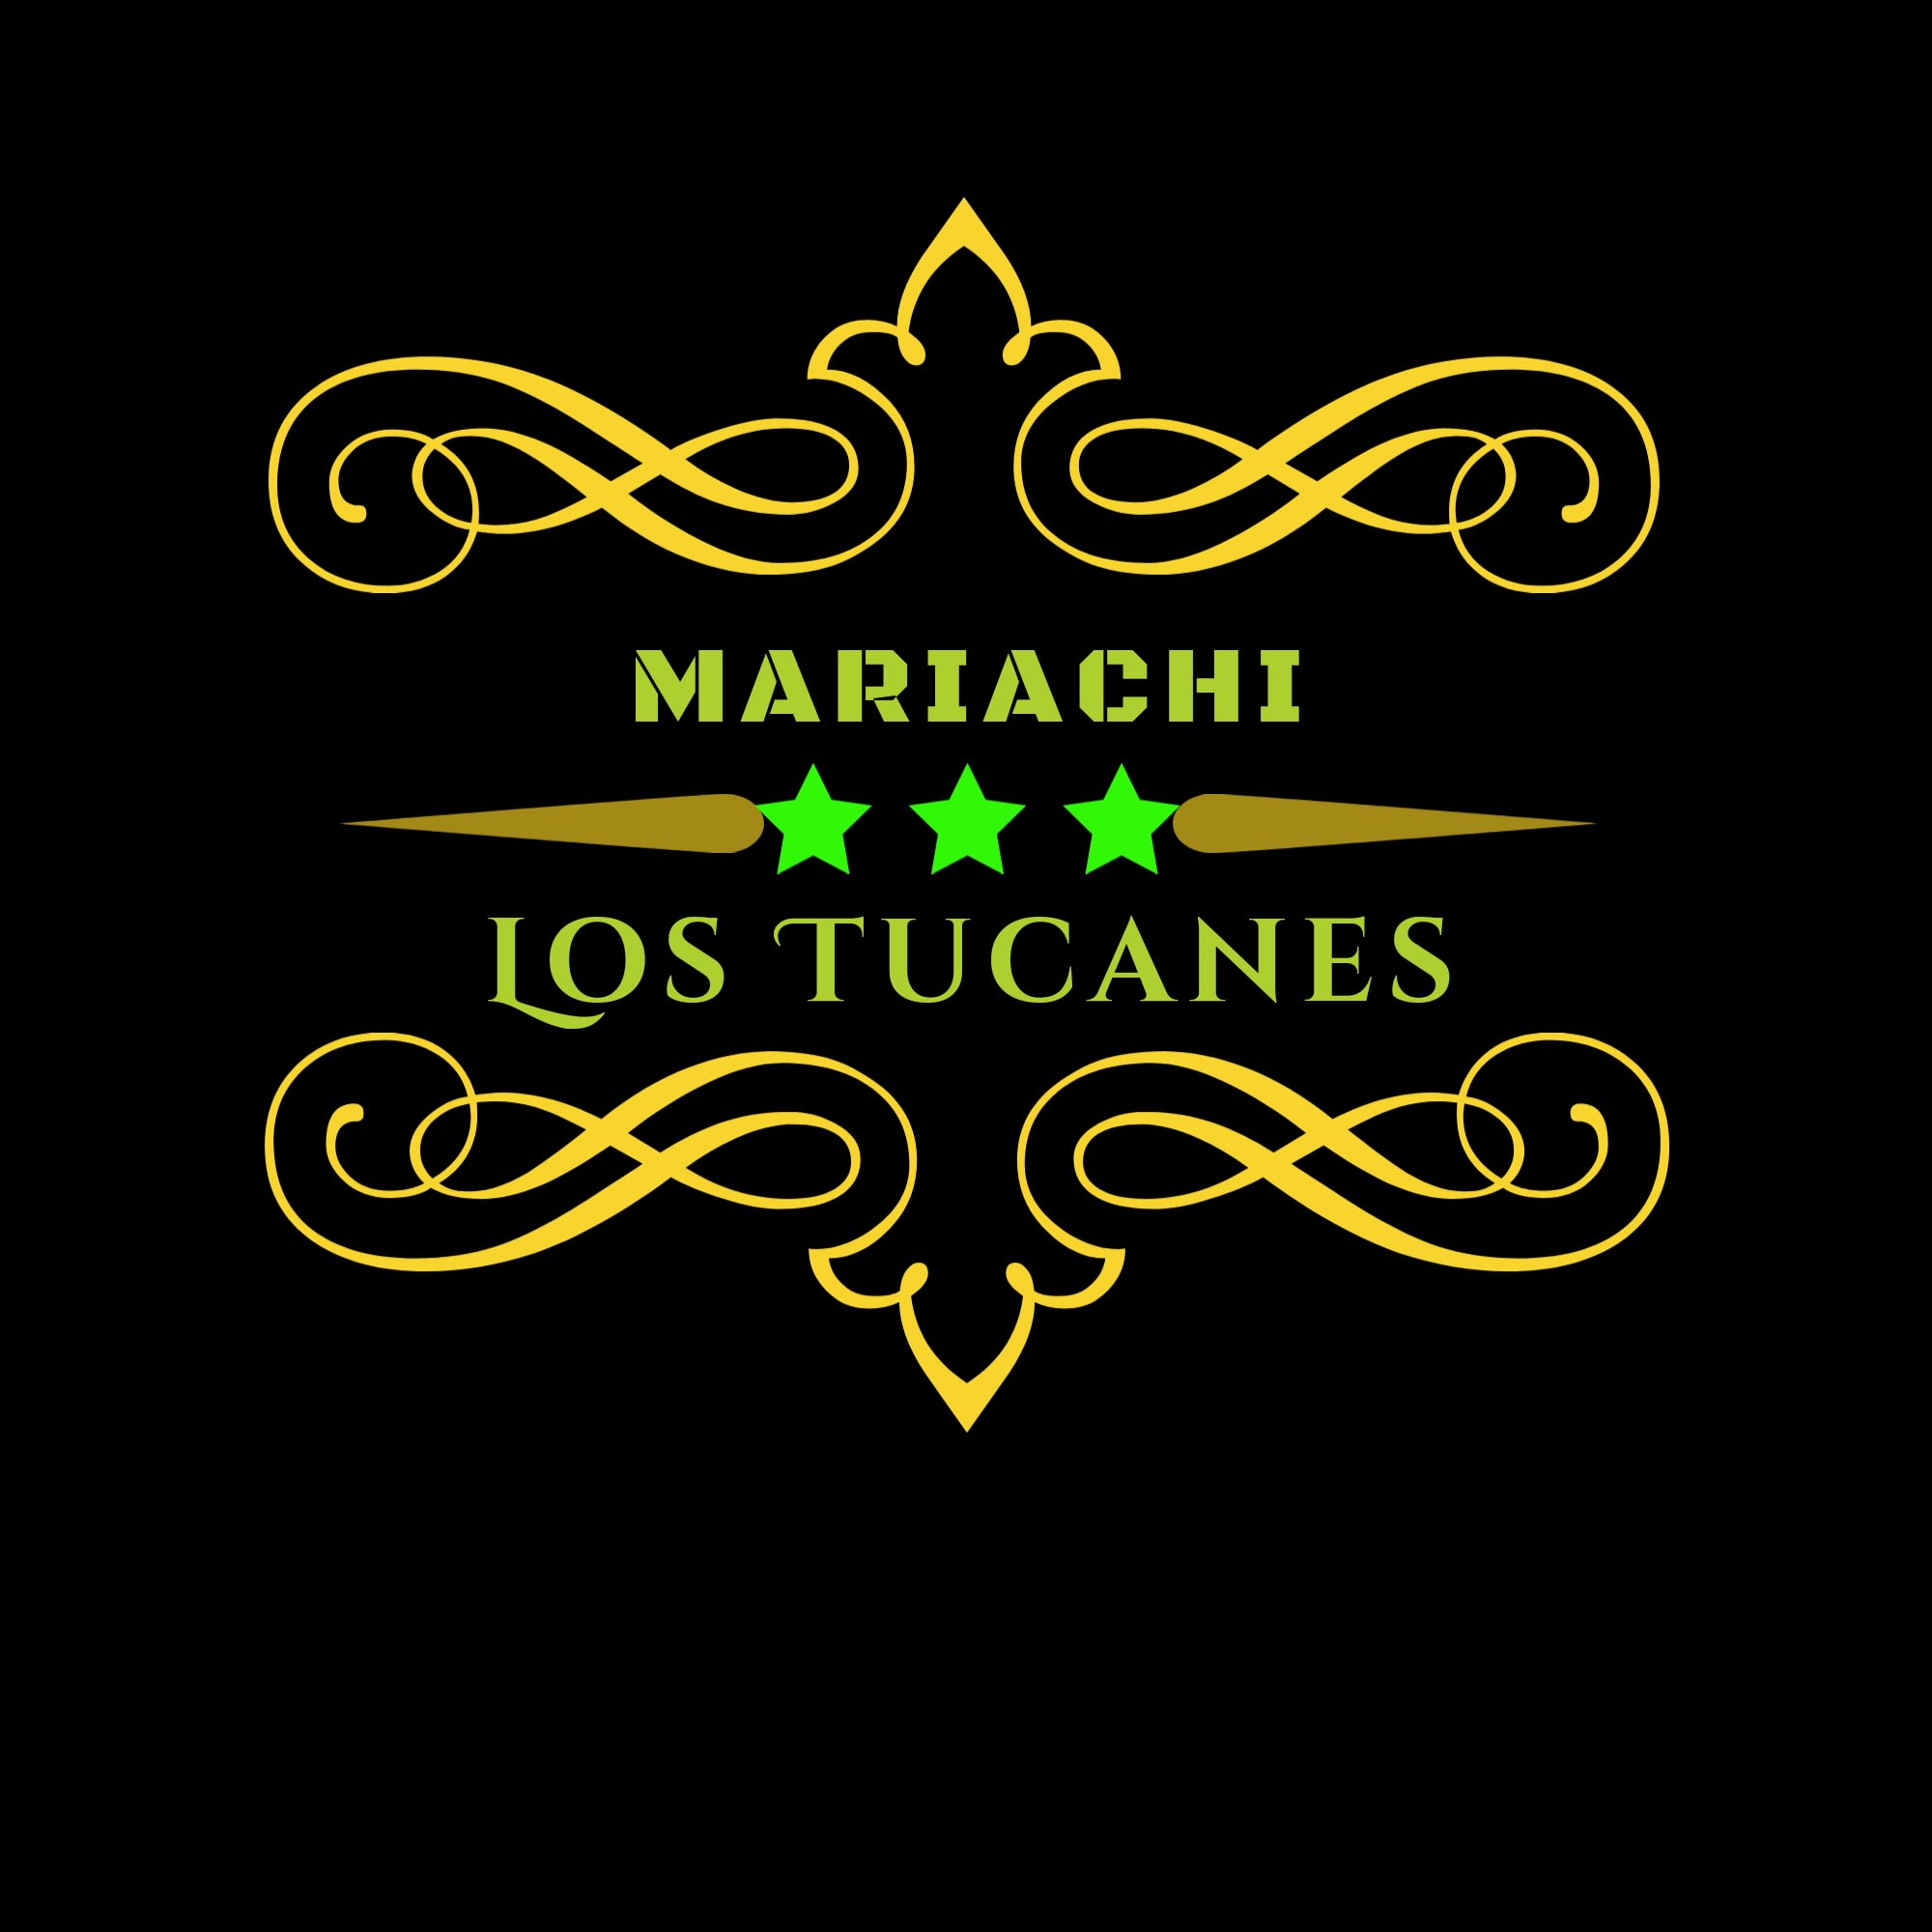 Mariachi Los Tucanes